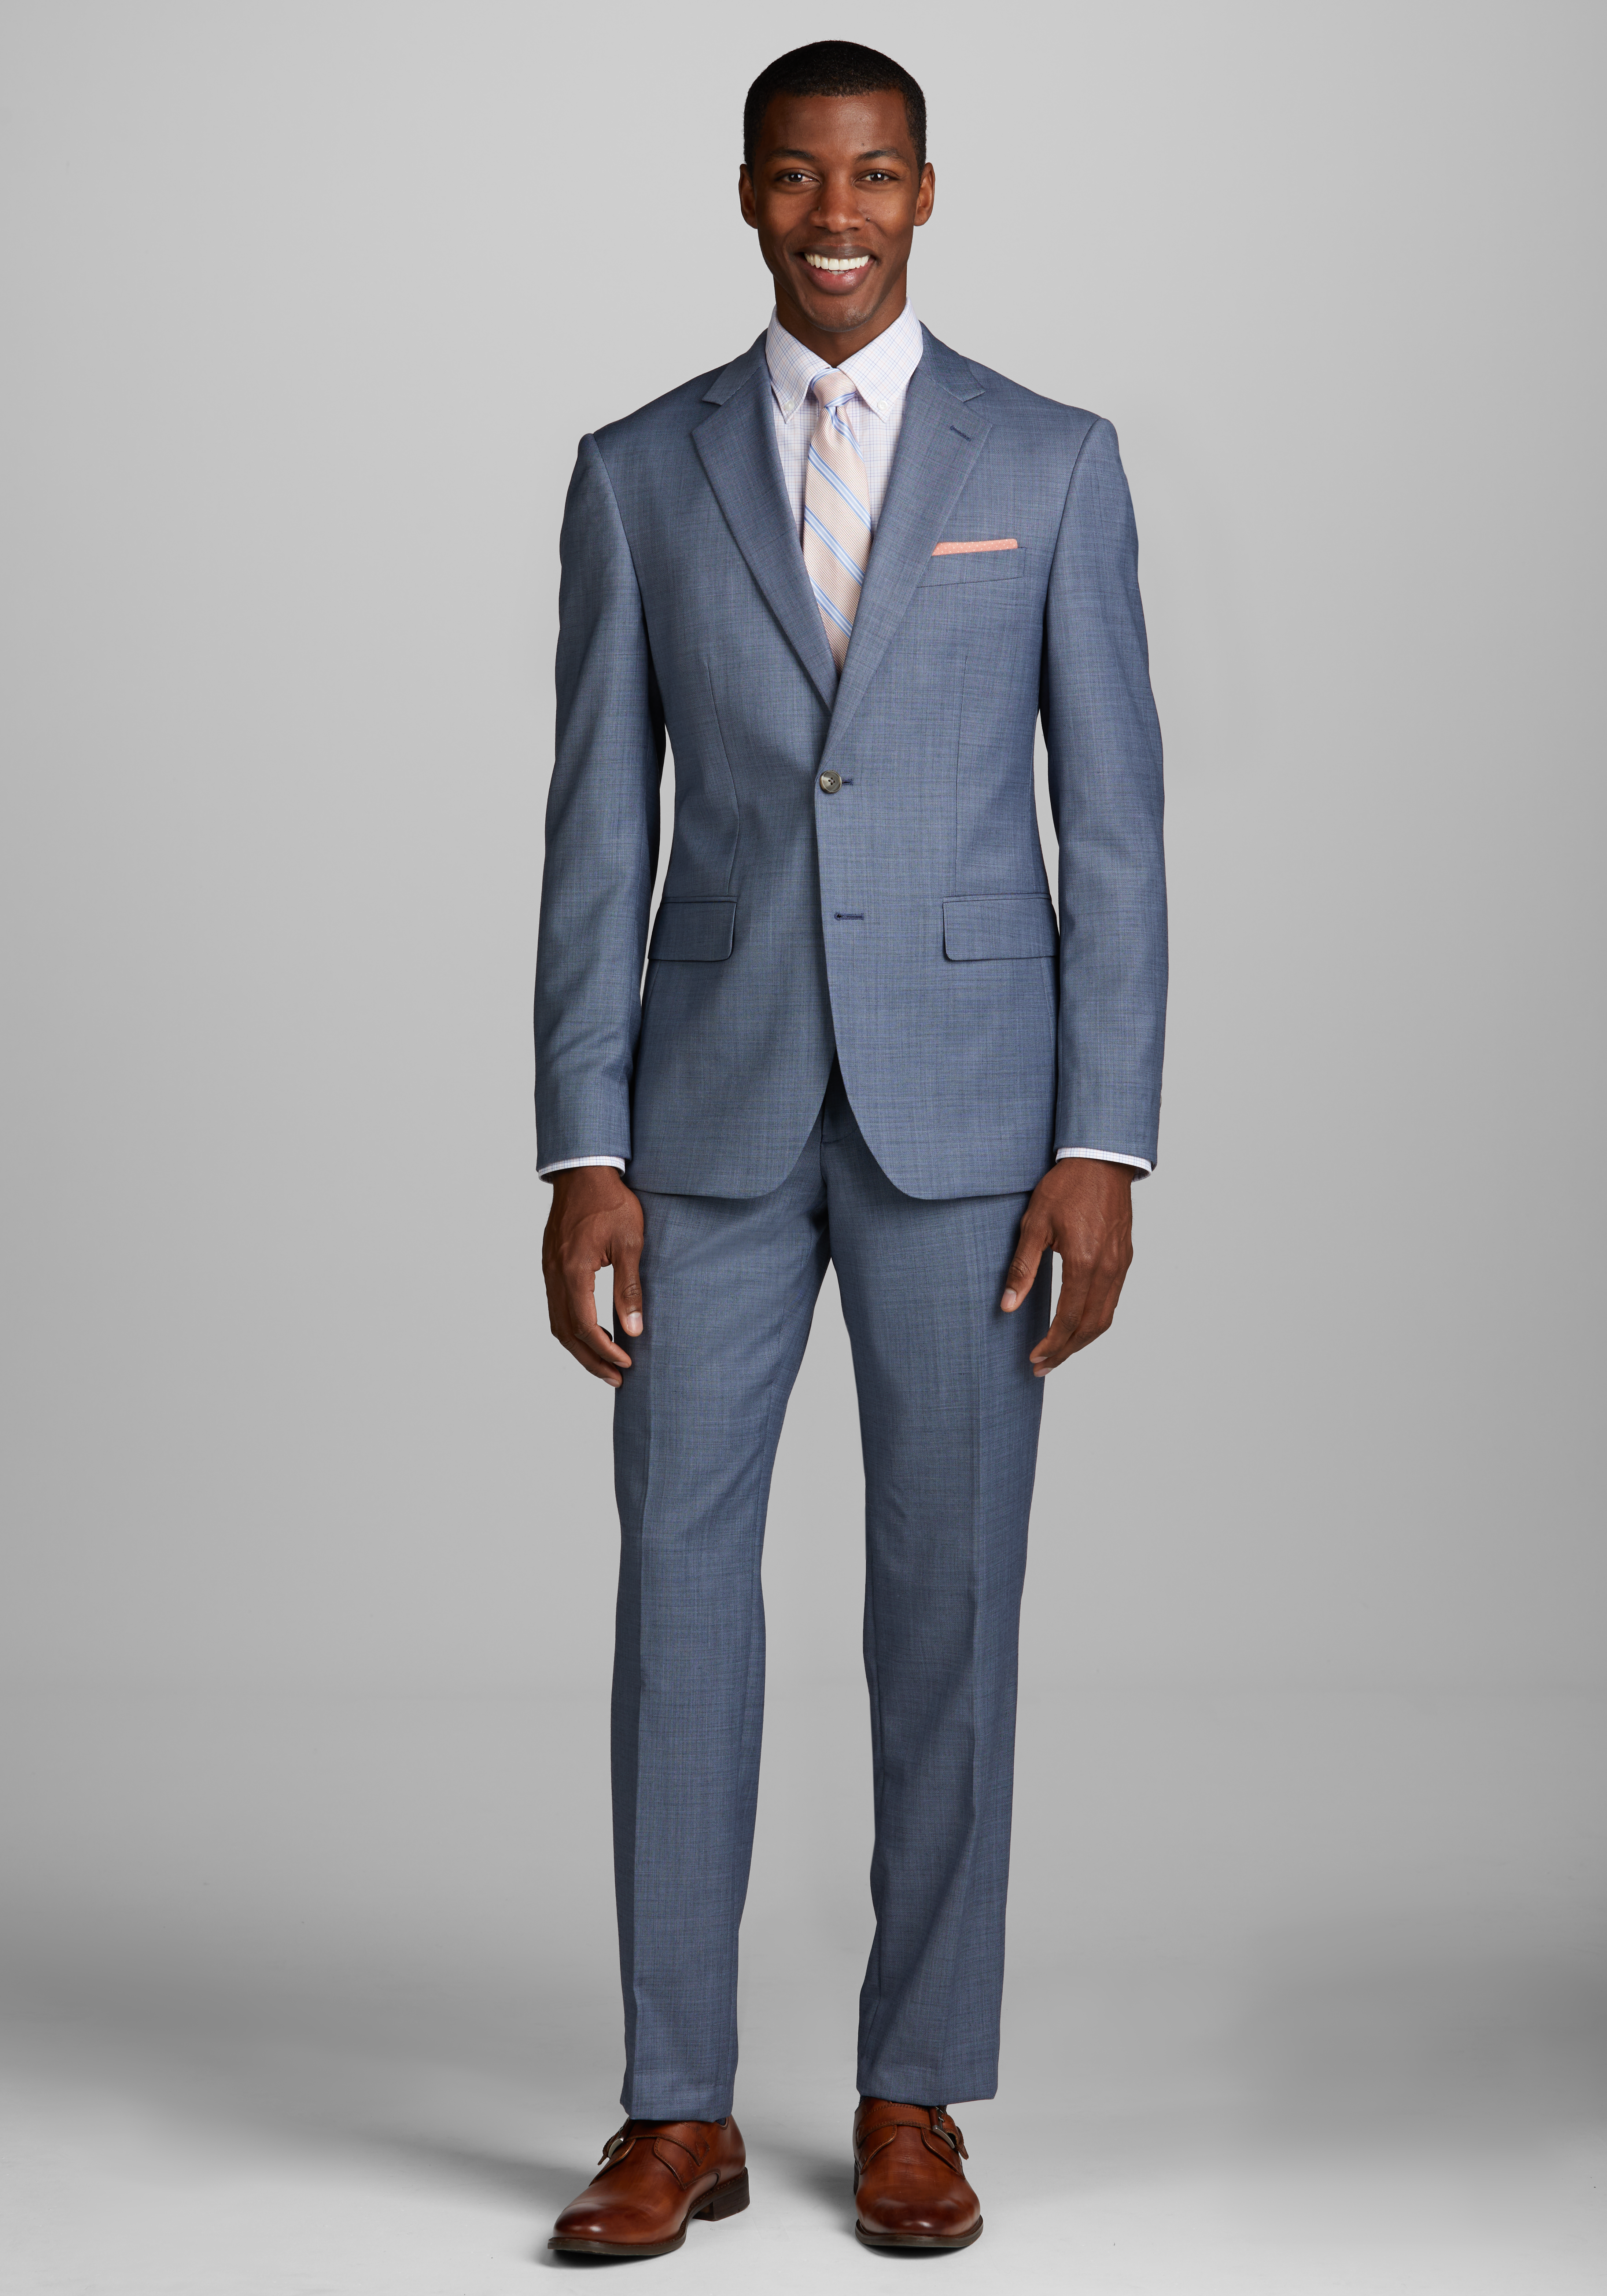 Suits | Buy Suit Deals, Grey Suits | A. Bank Clothiers